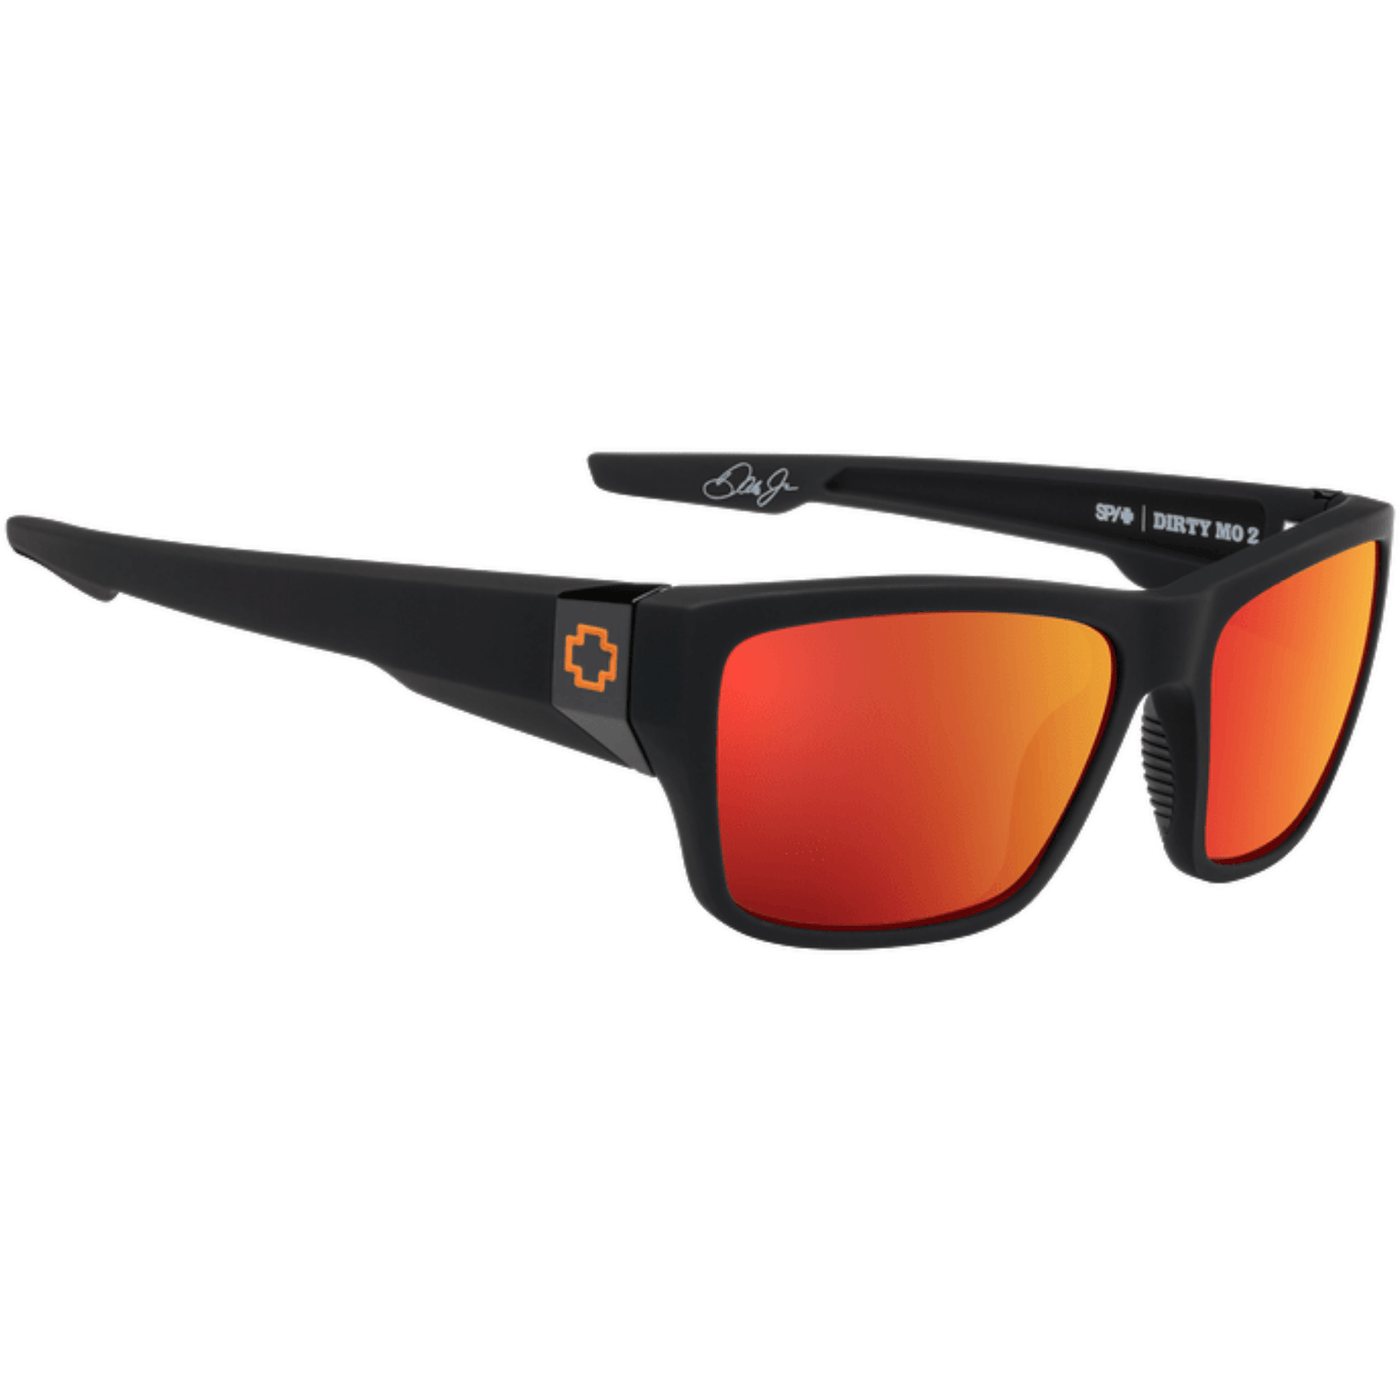 polarized sunglasses for boating - orange